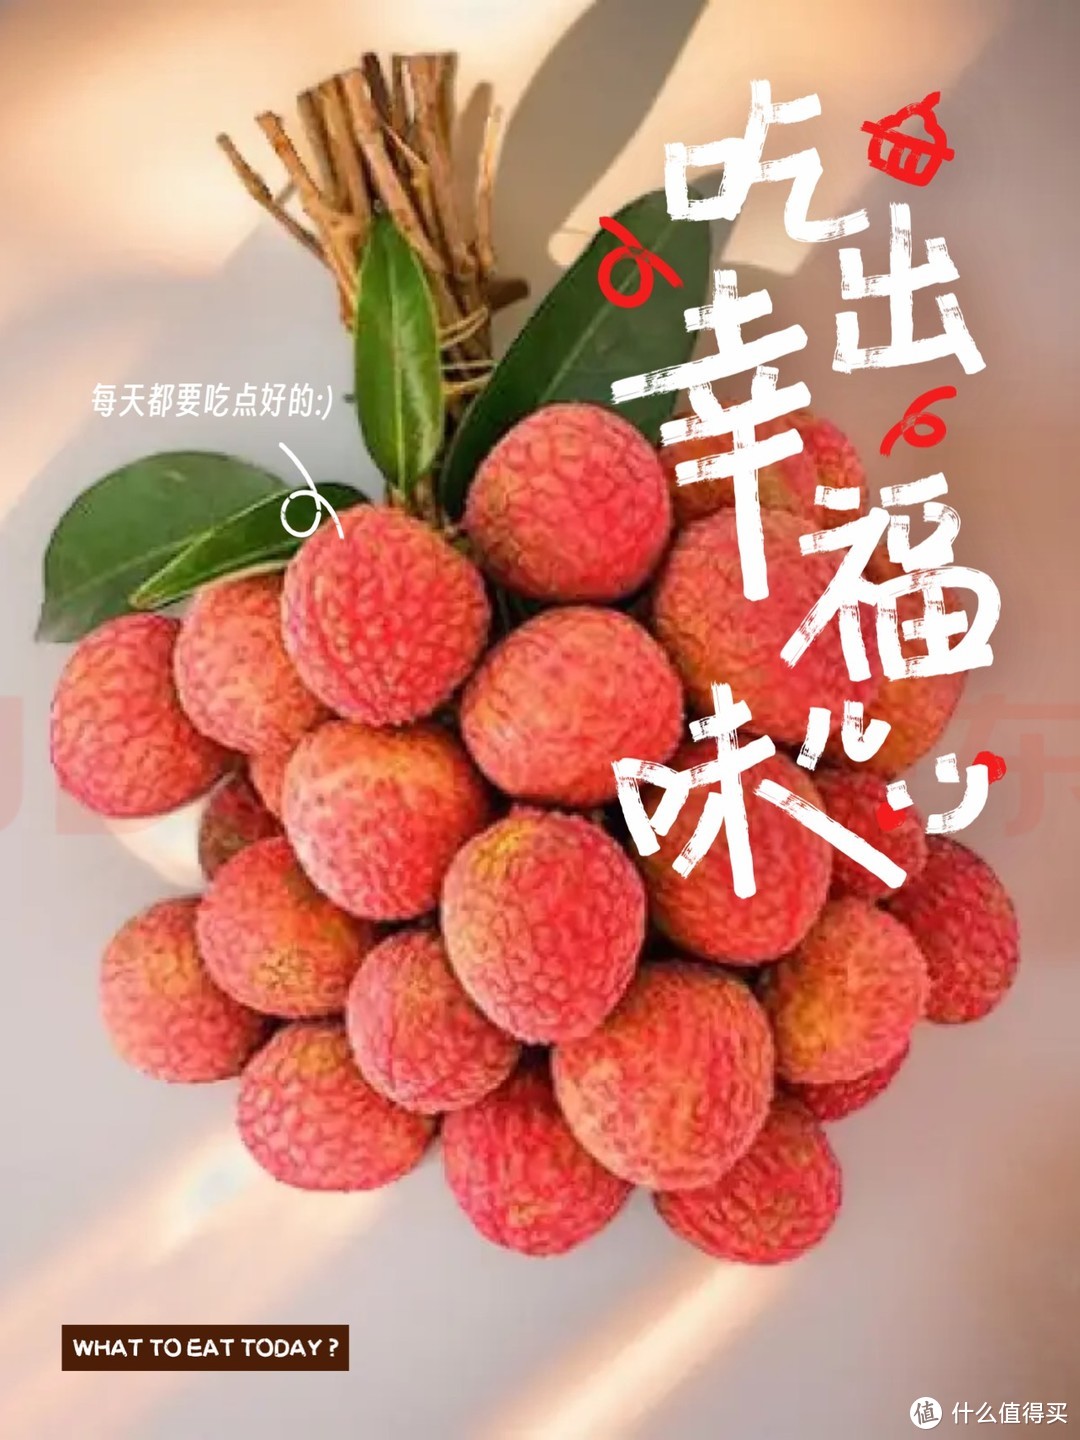 炎热的夏季来临，喜爱的樱桃、荔枝新鲜上市啦！你爱吃时令水果有哪些呢？